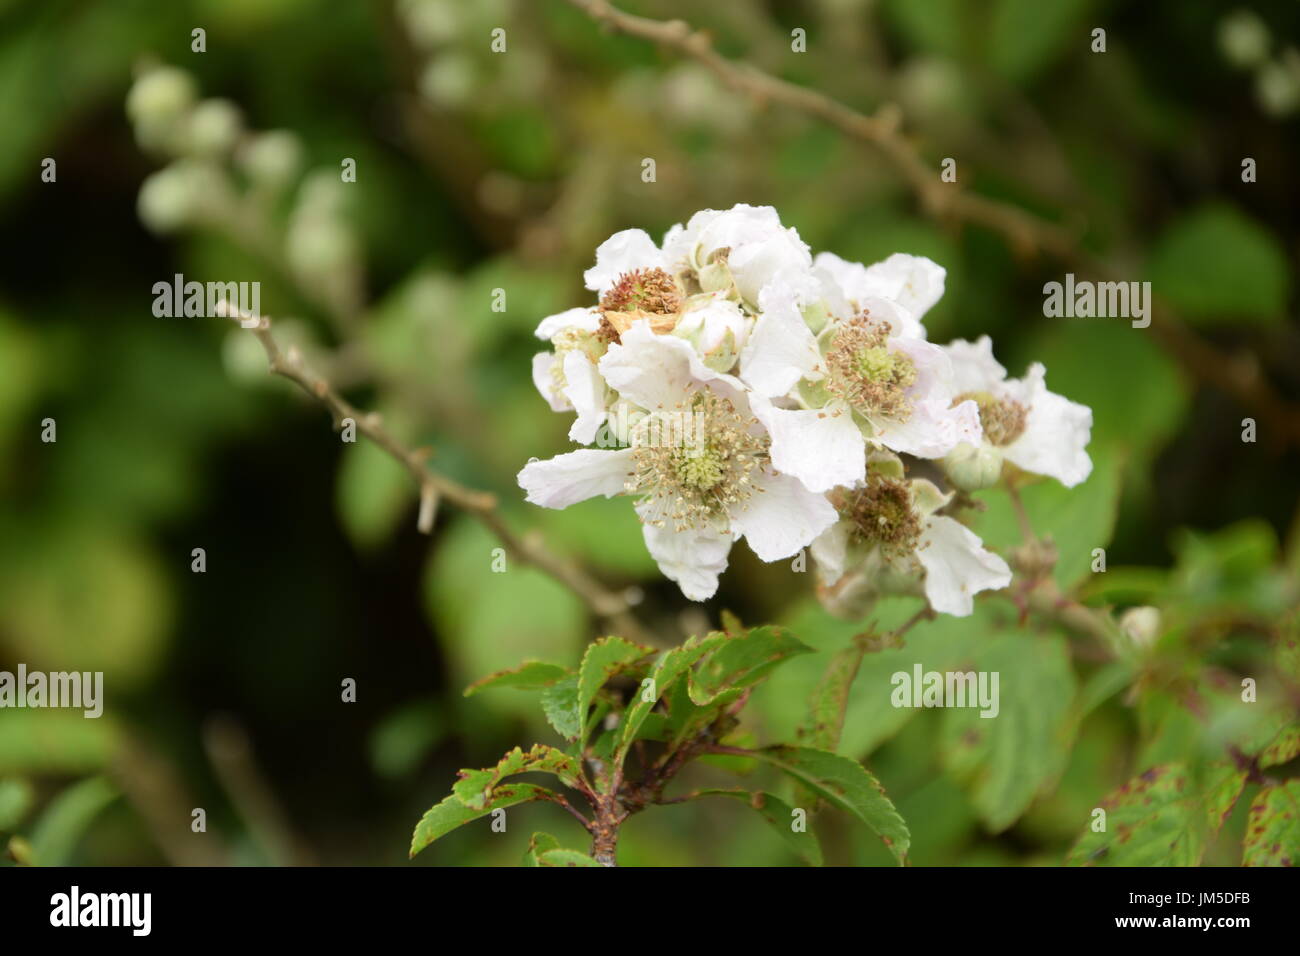 Blackberry fiori sulla boccola con foglie verdi in Irlanda Foto Stock